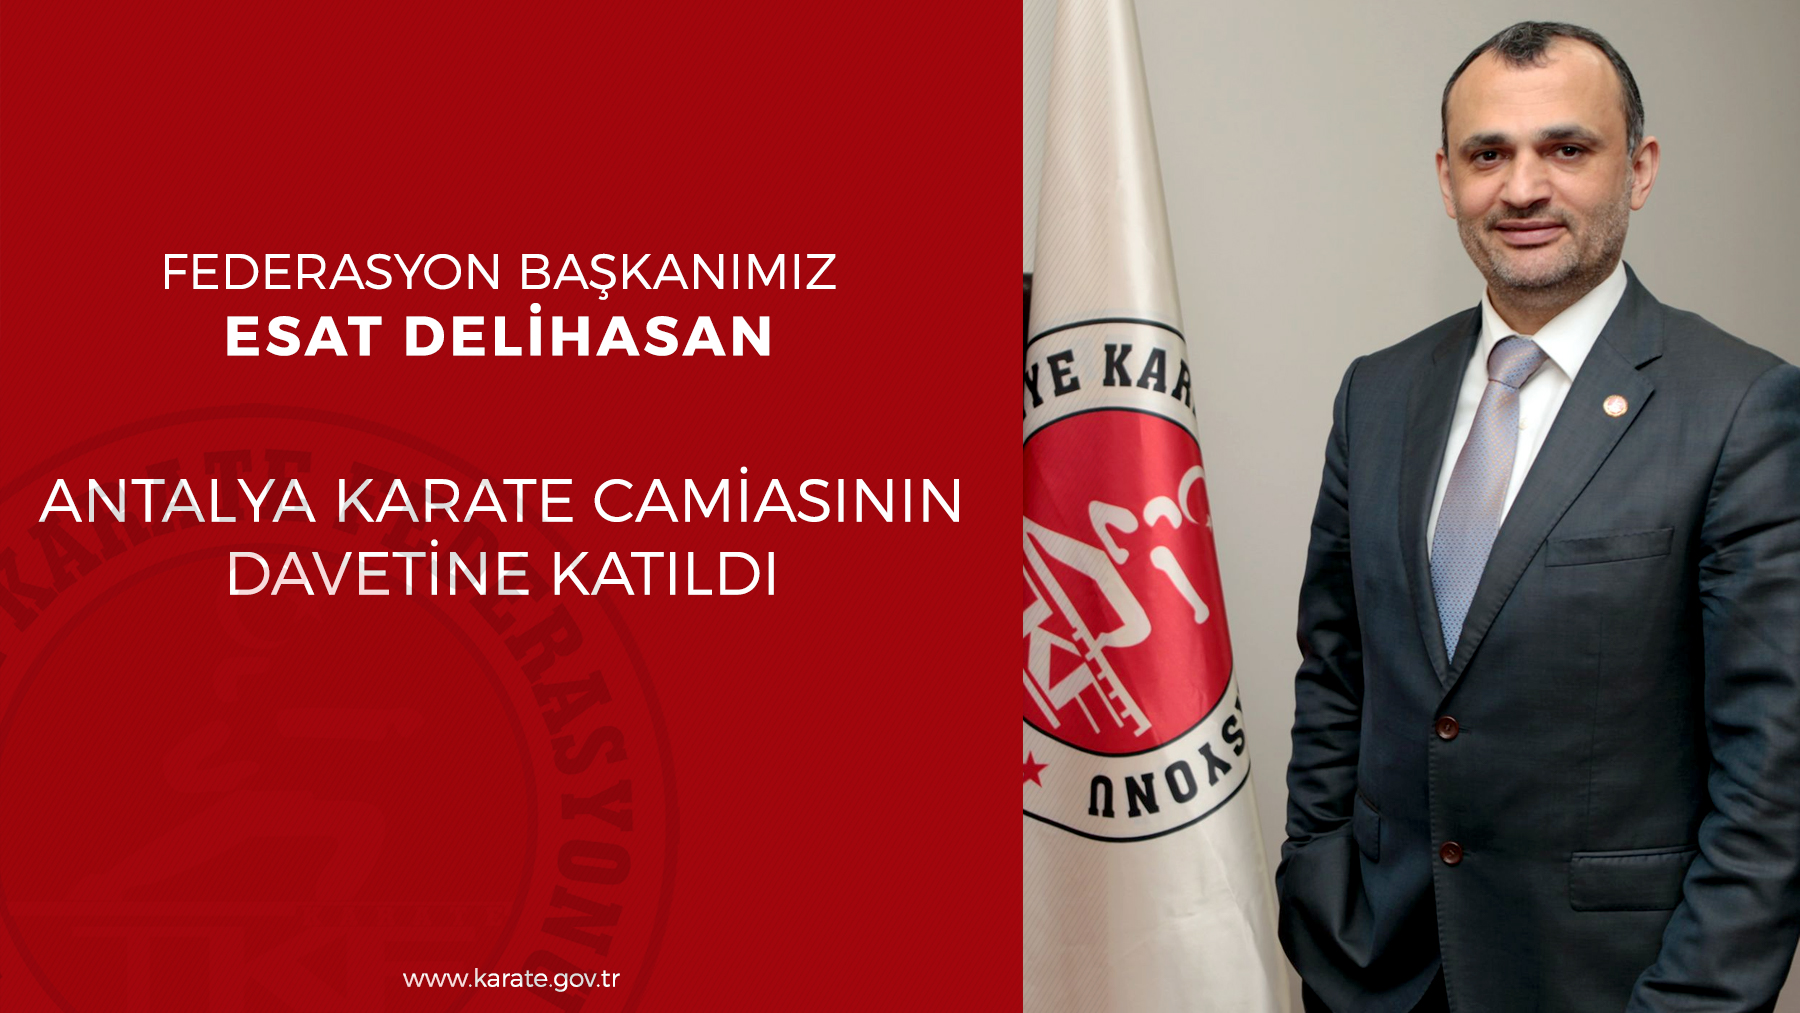 Antalya camiası Başkan Esat Delihasan'ı ağırladı